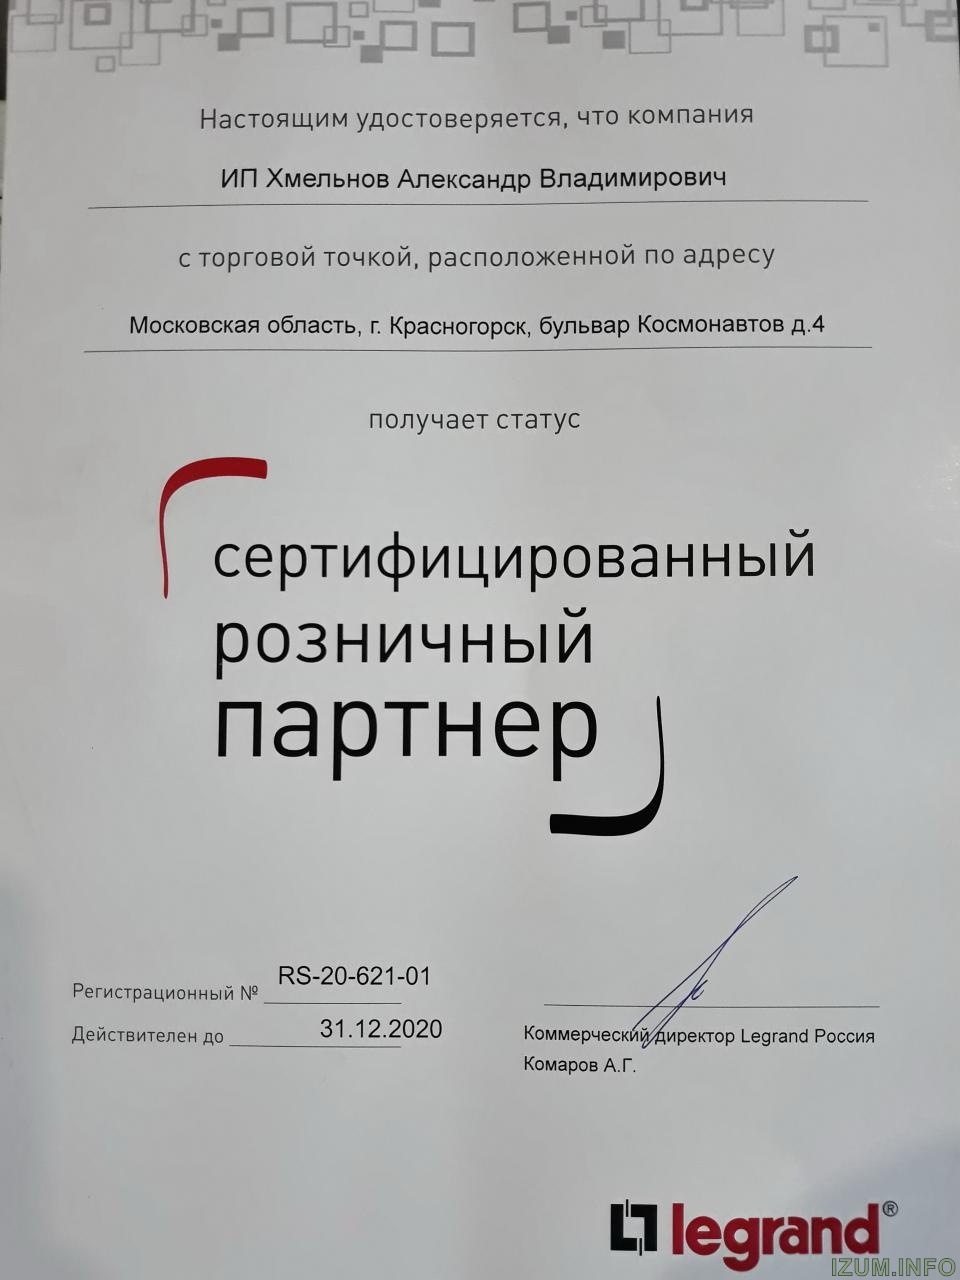 Сертификат партнера Legrand 2020.jpg